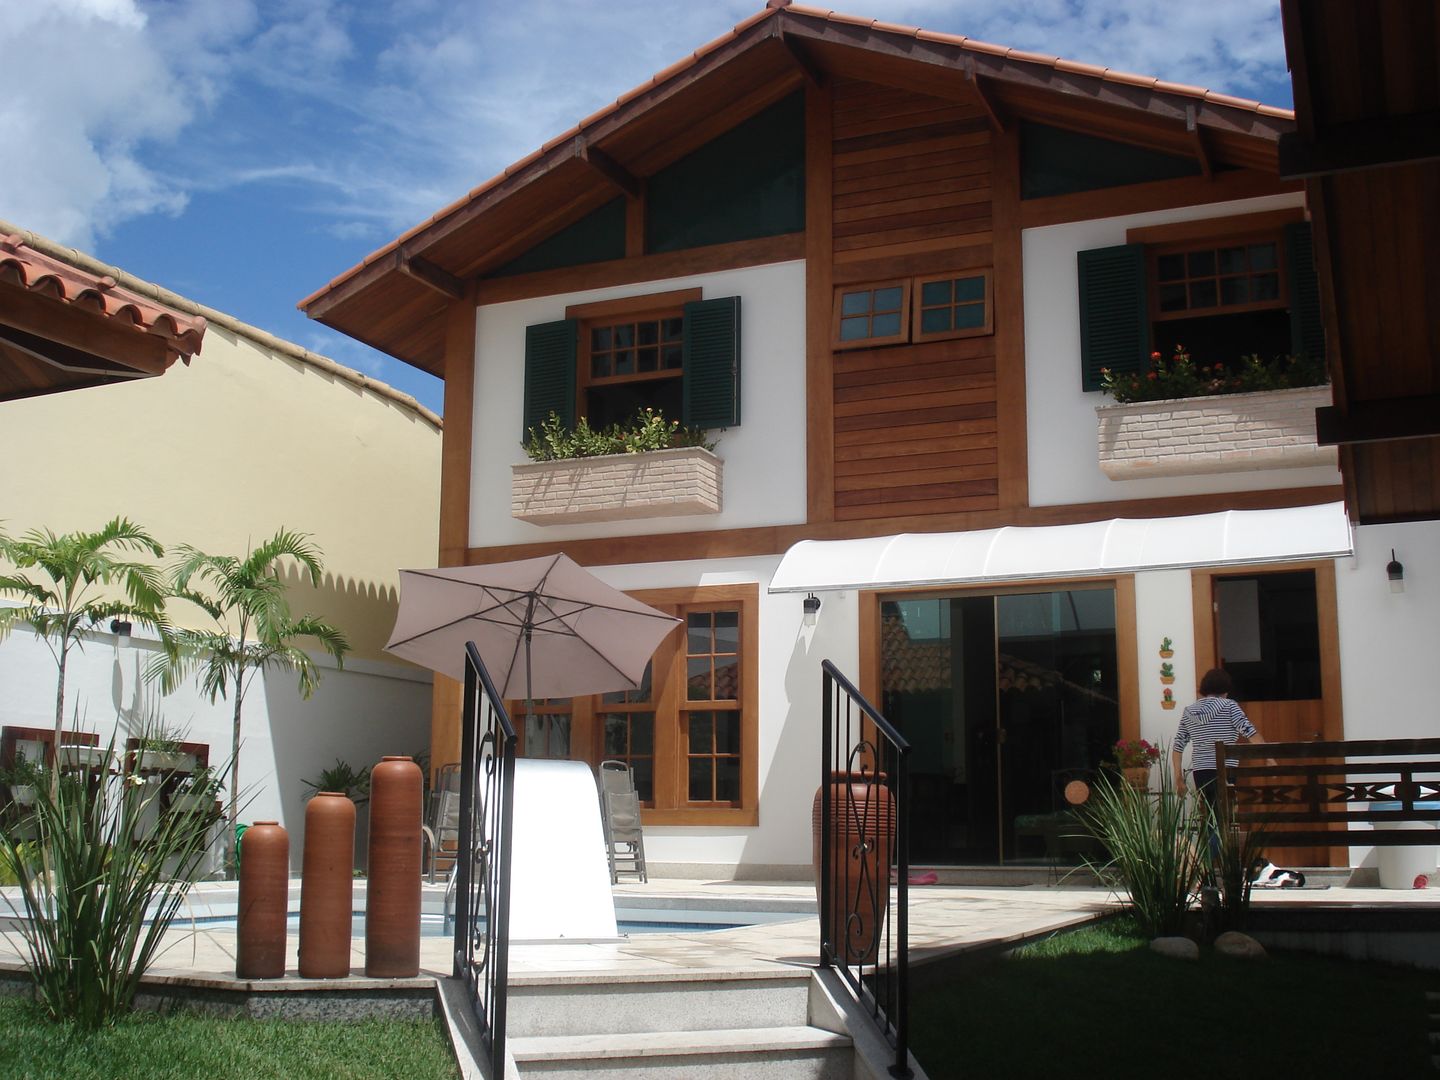 ​Em Campos, uma casa de campo, Ronaldo Linhares Arquitetura e Arte Ronaldo Linhares Arquitetura e Arte Wooden houses